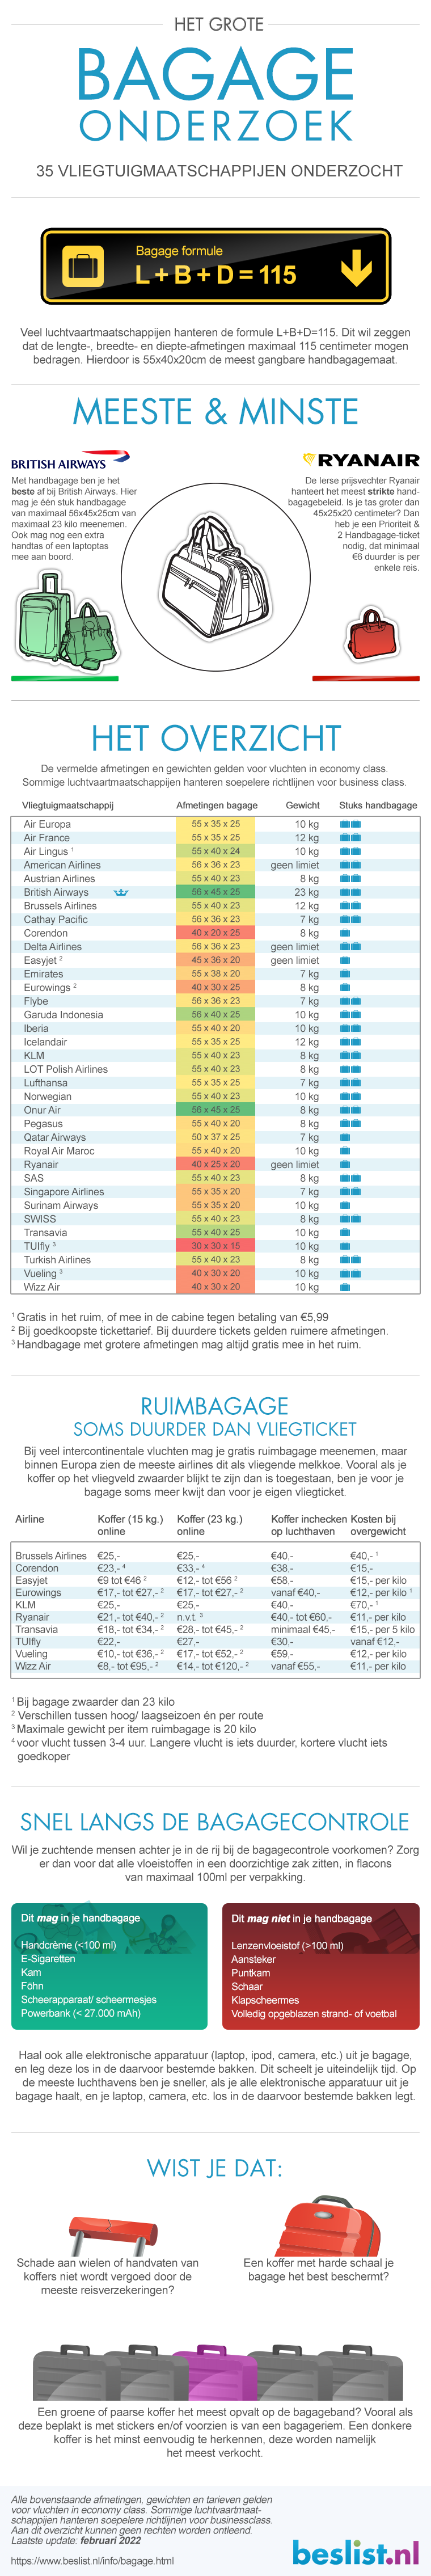 Afmetingen handbagage koffers Gewicht & formaat per vliegmaatschappij - beslist.nl